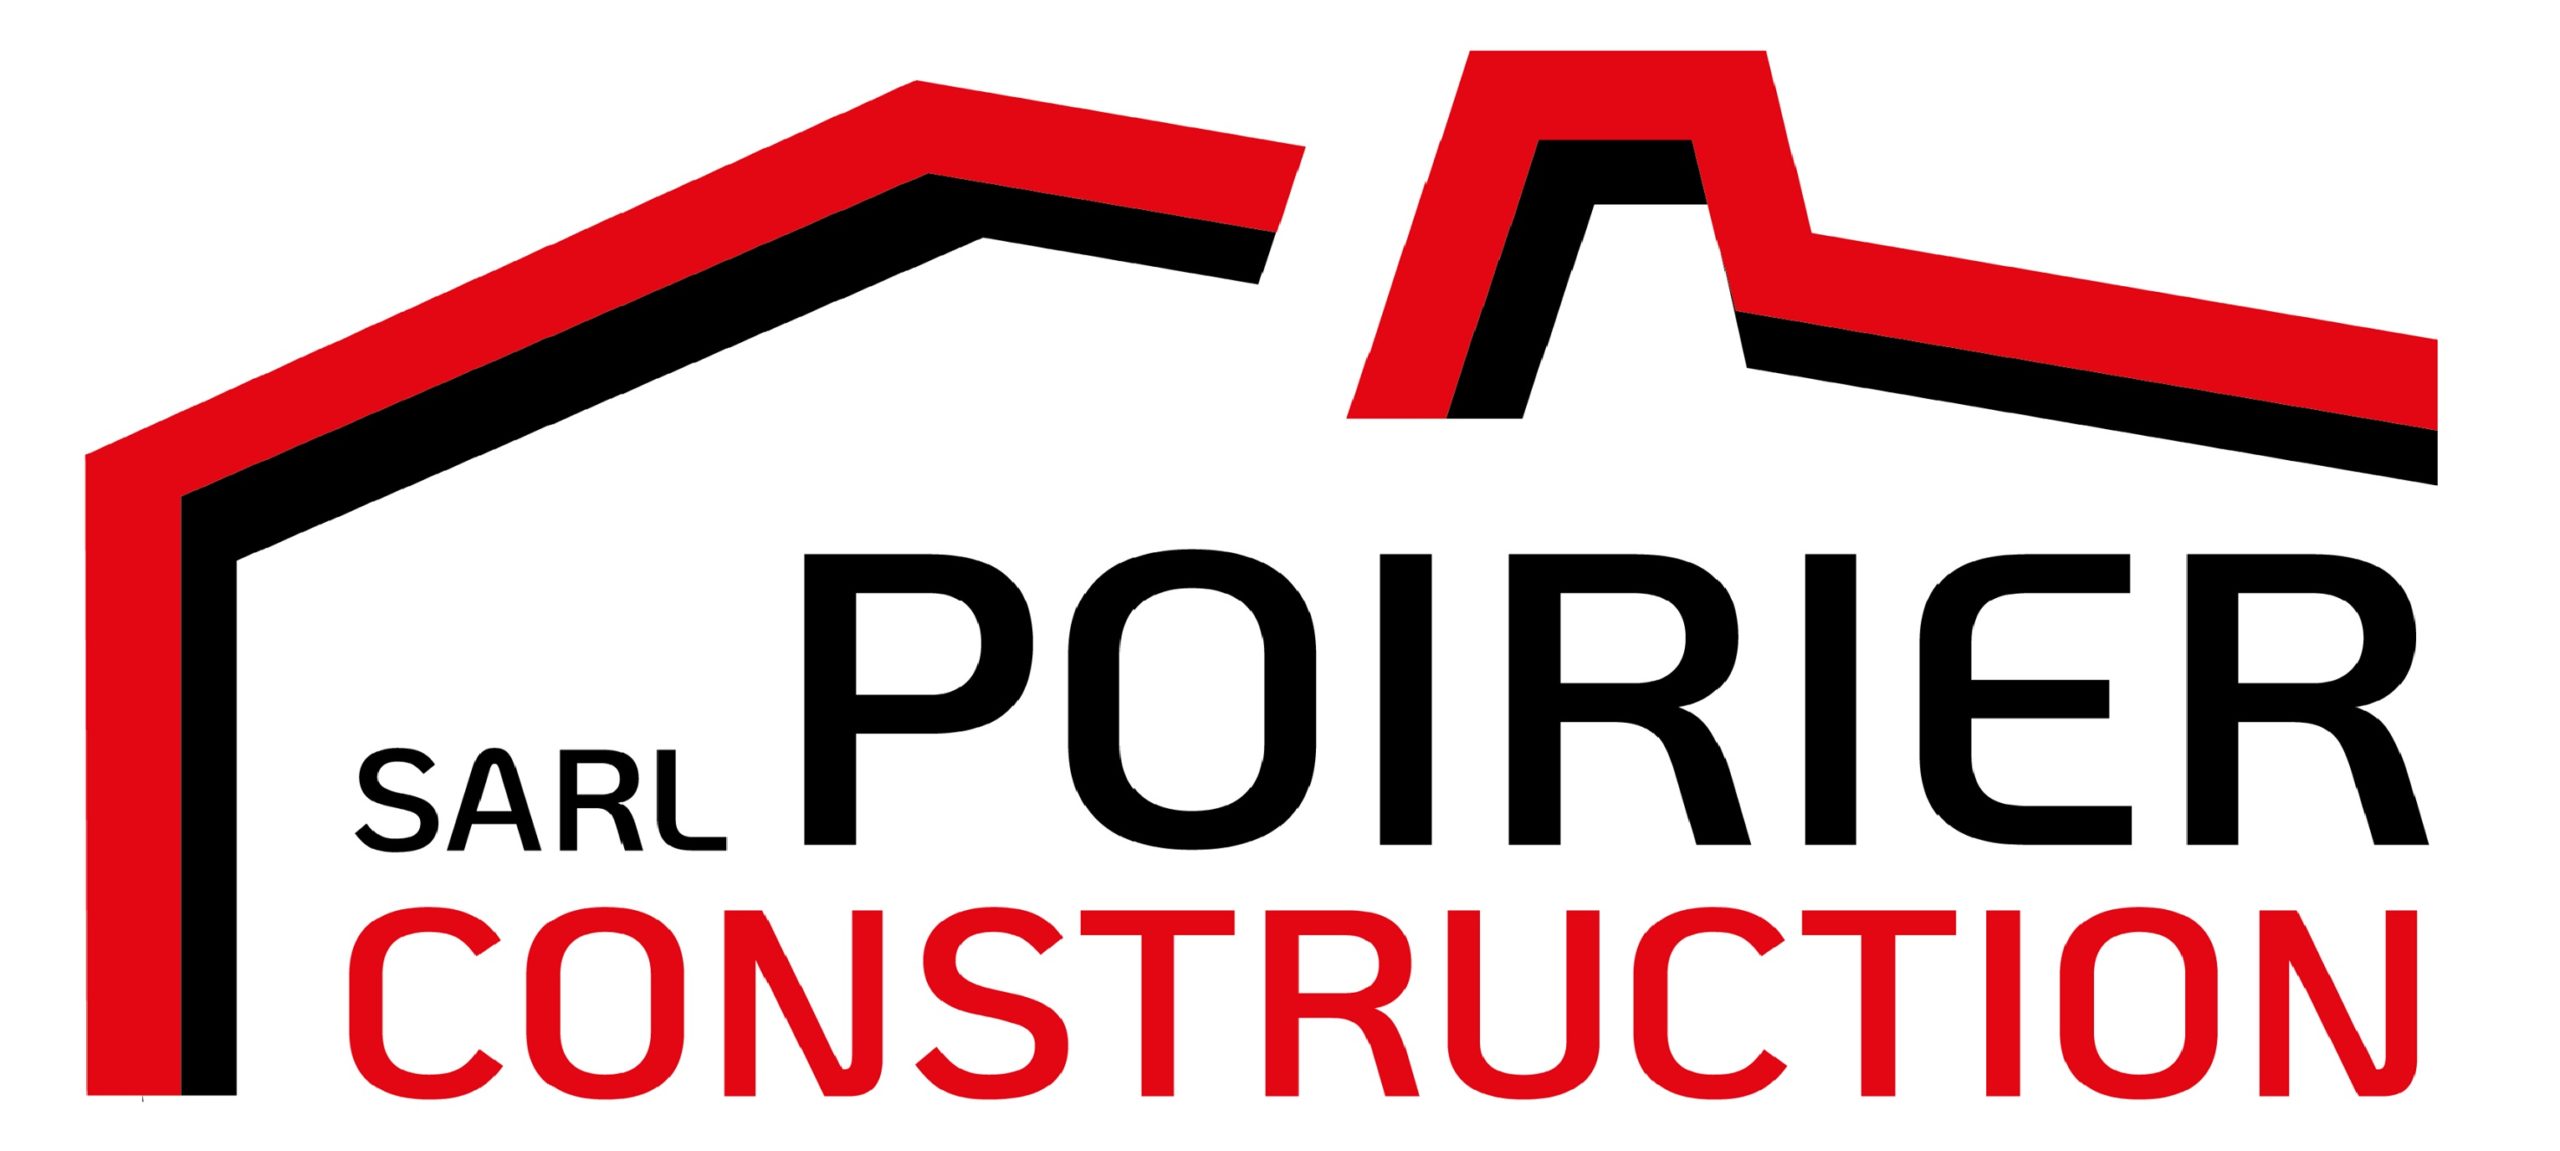 Poirier Construction